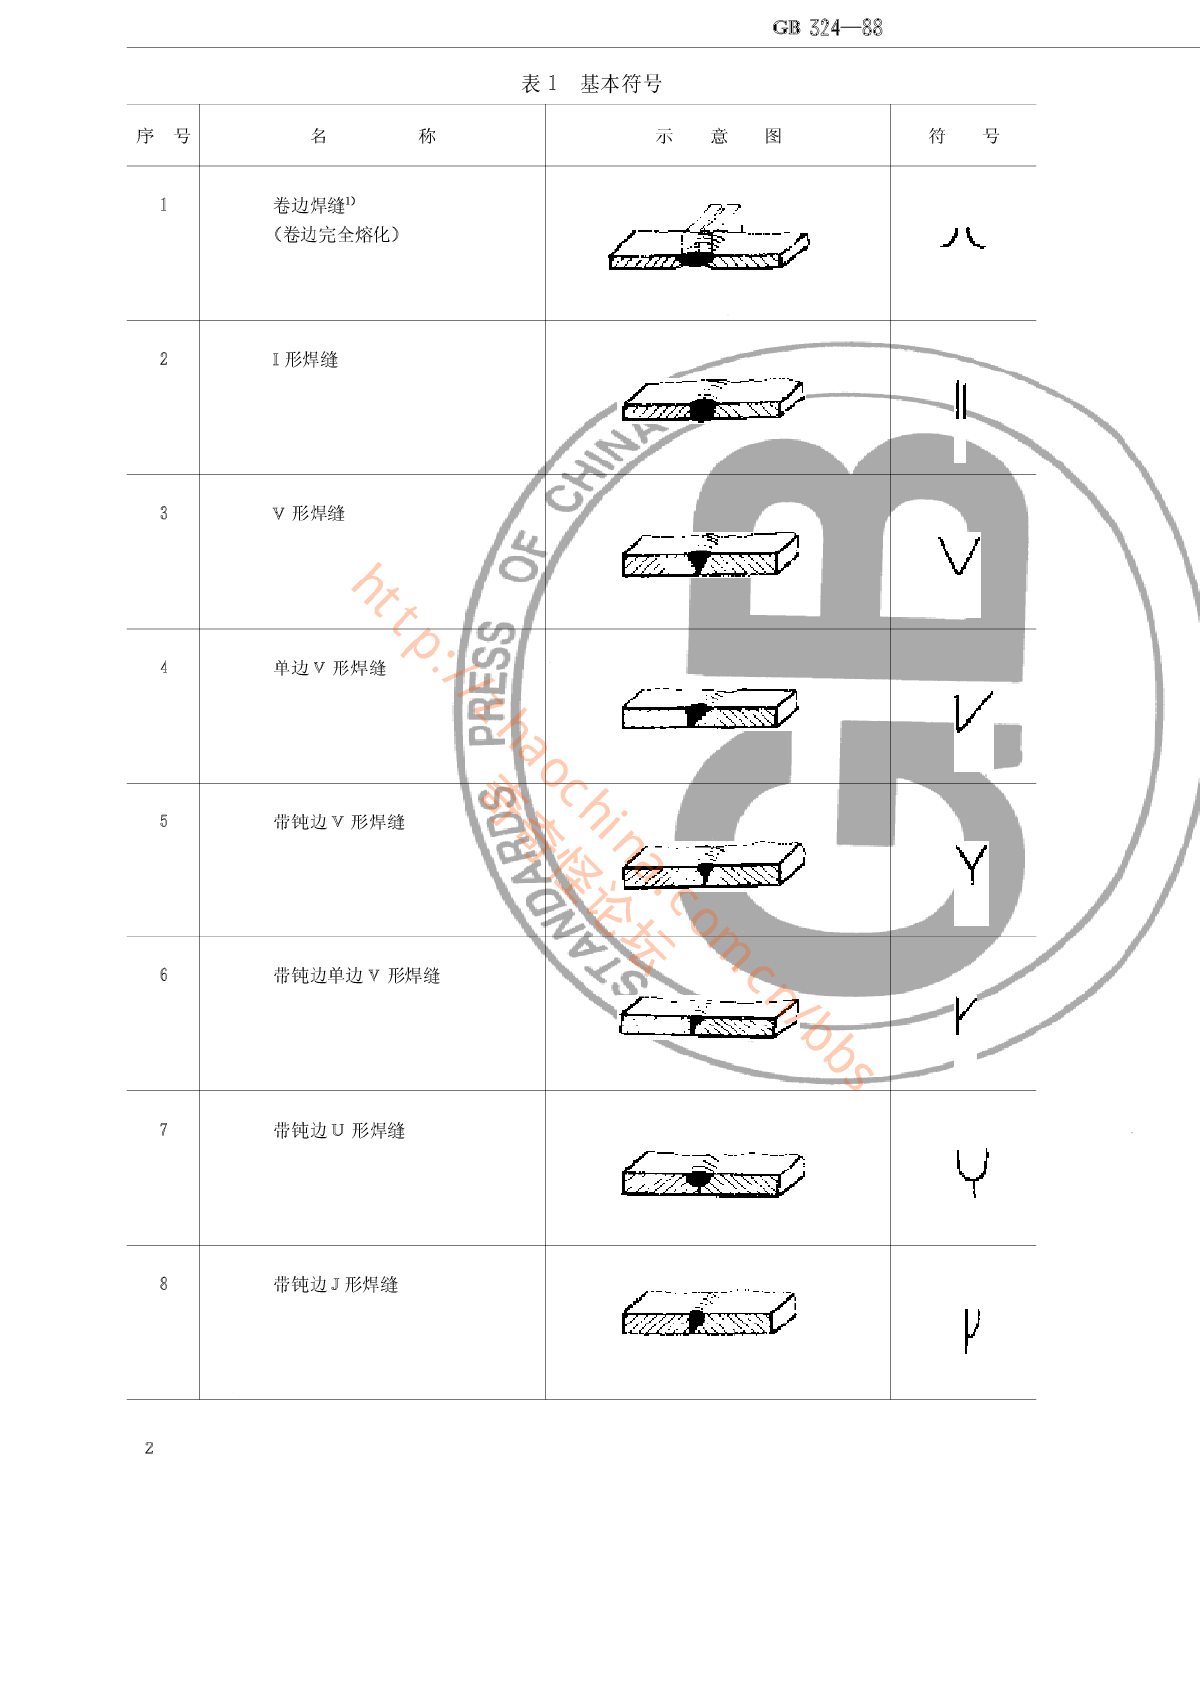 焊缝符号表示法_GB324-88.pdf-图二